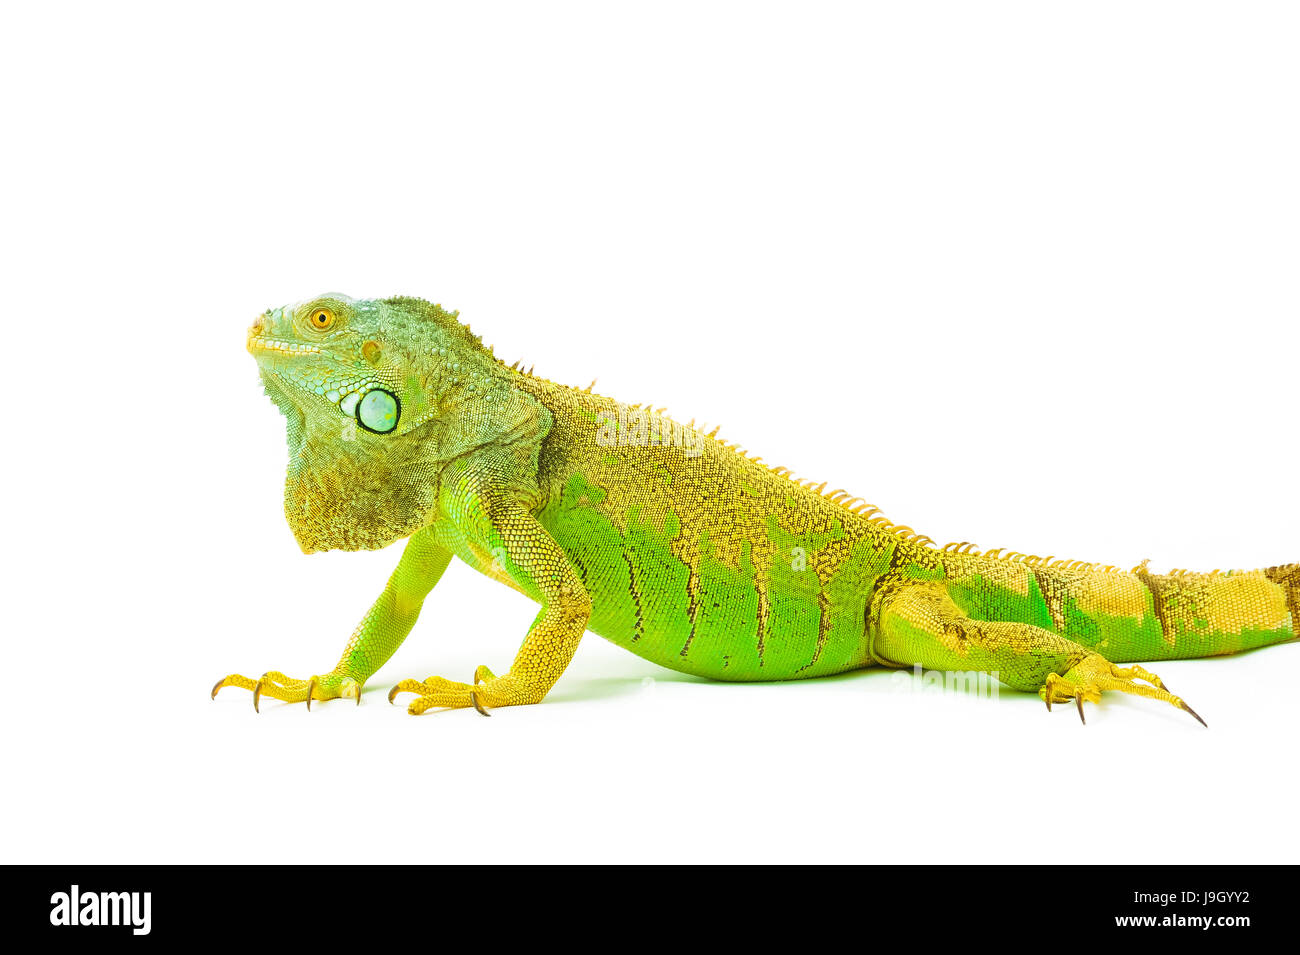 Un iguane vert lézard reptile .sit on white background Banque D'Images